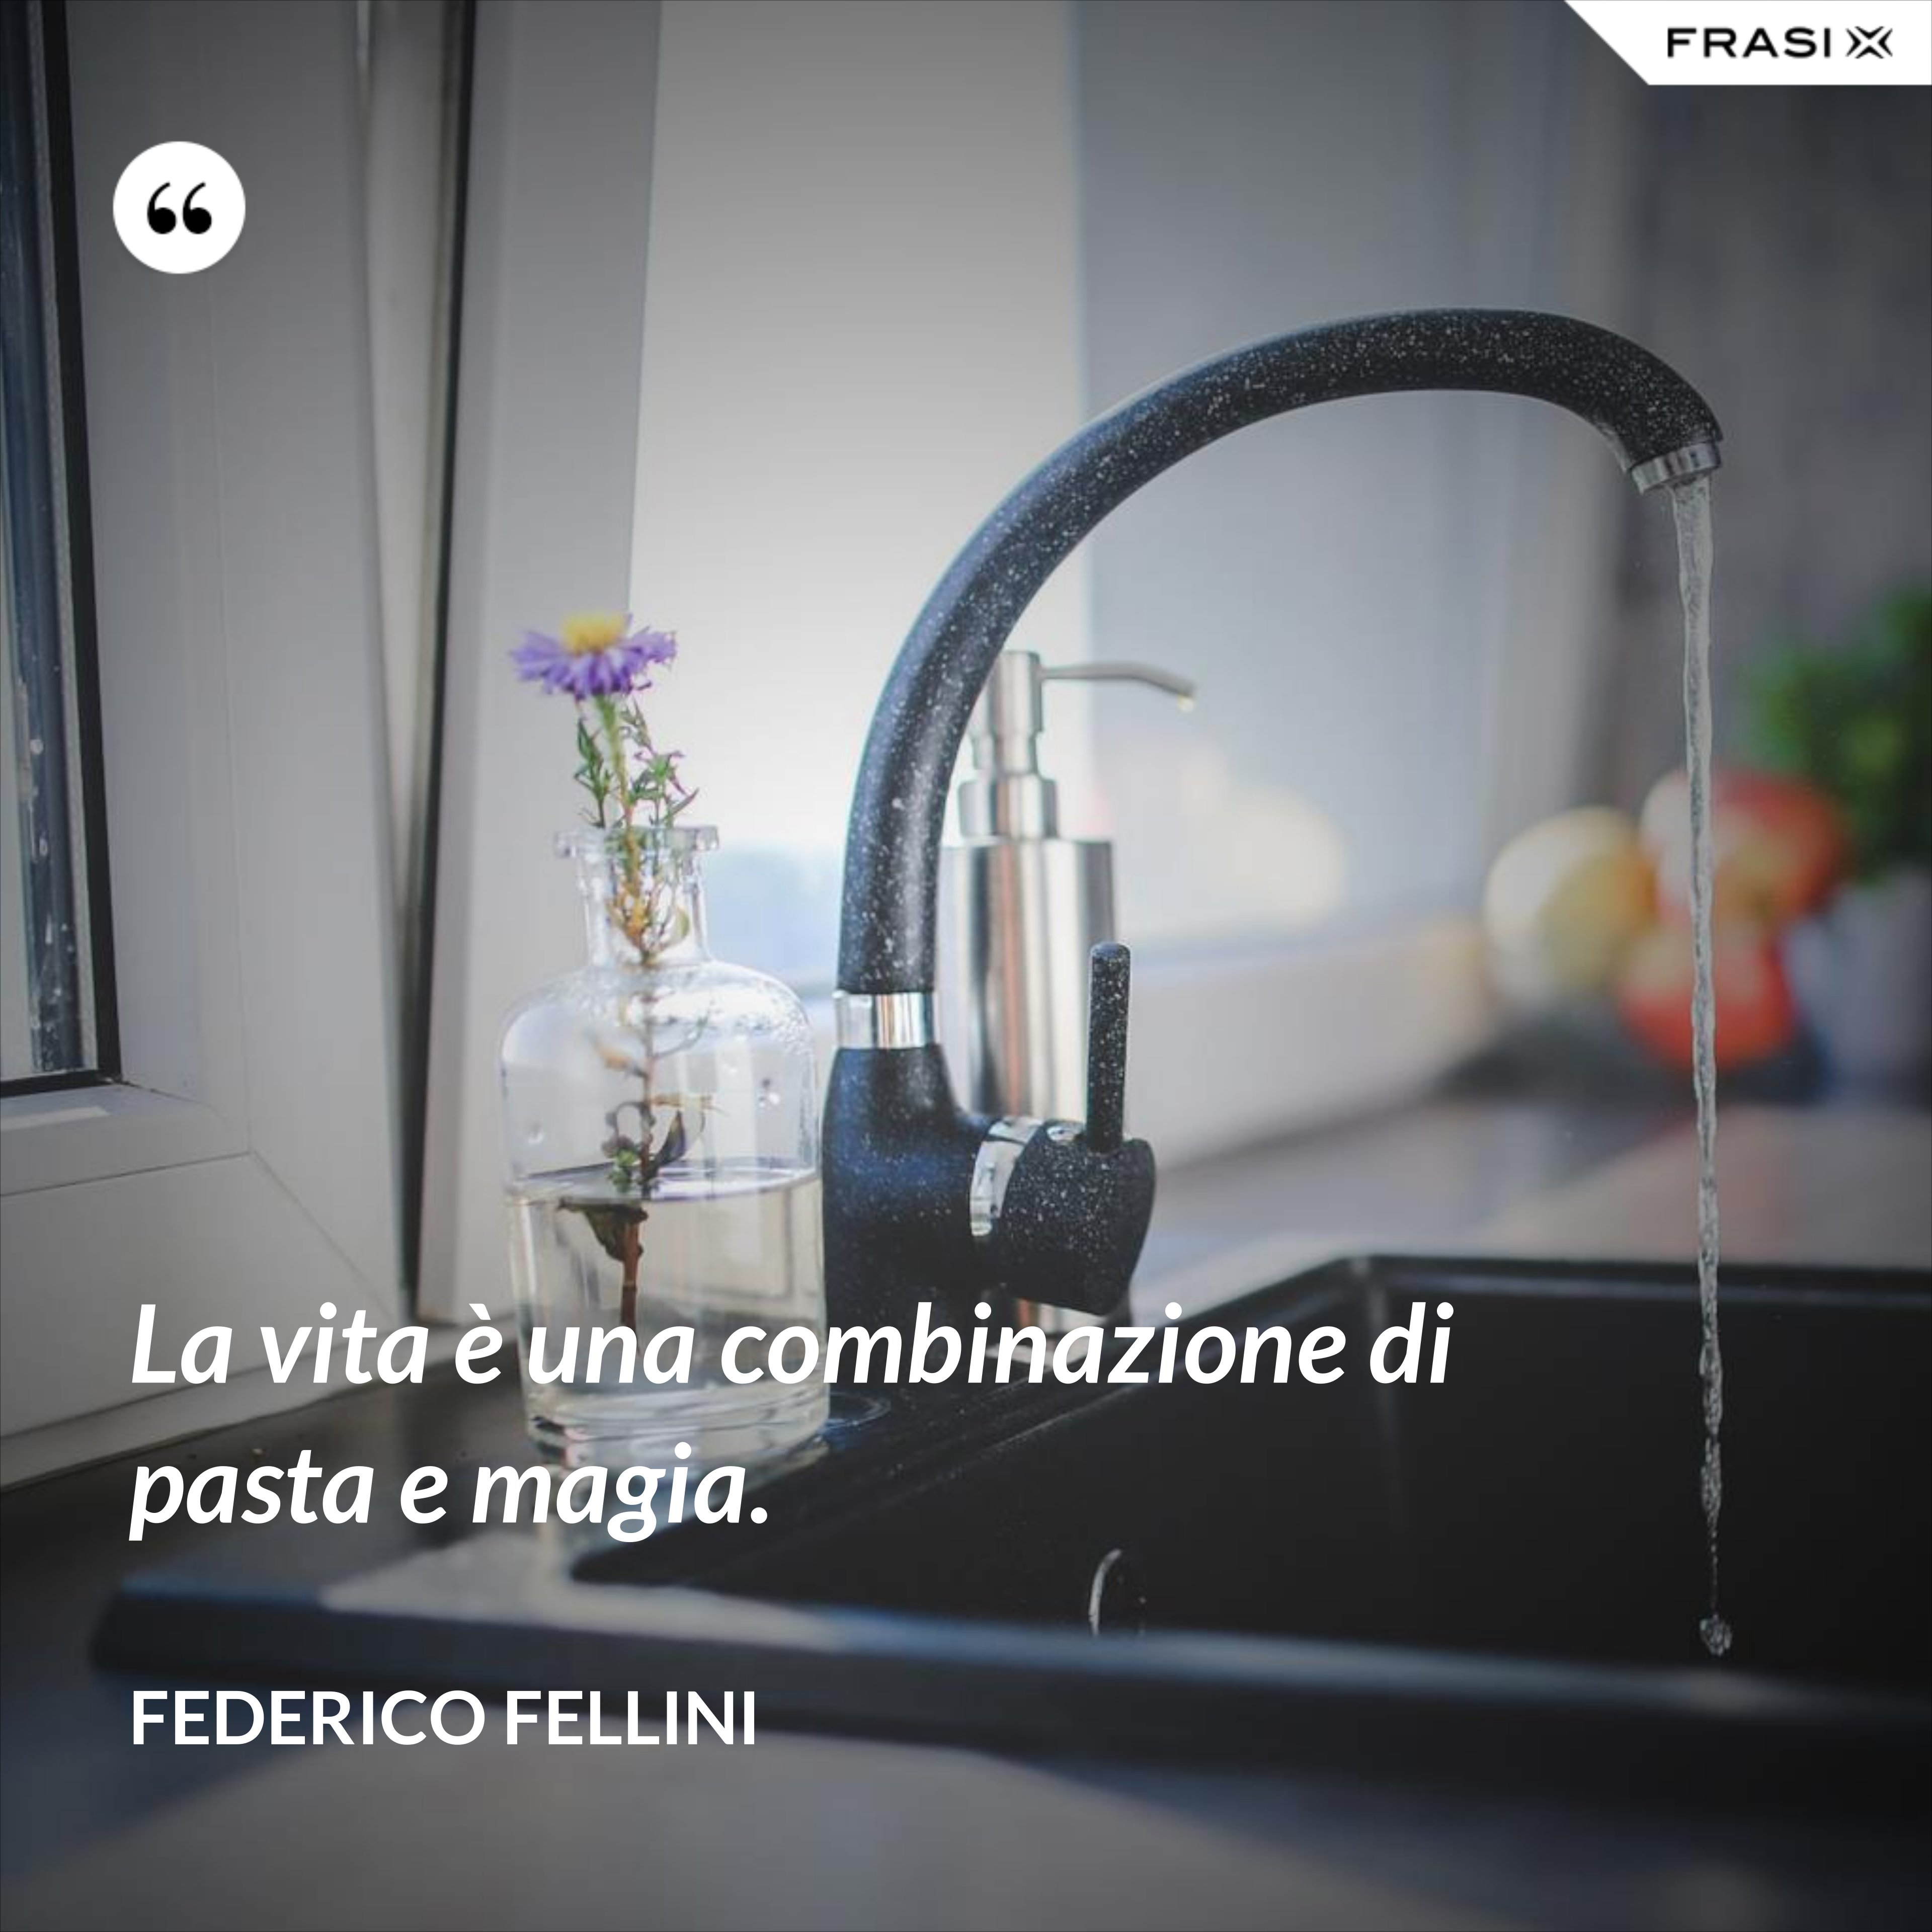 La vita è una combinazione di pasta e magia. - Federico Fellini